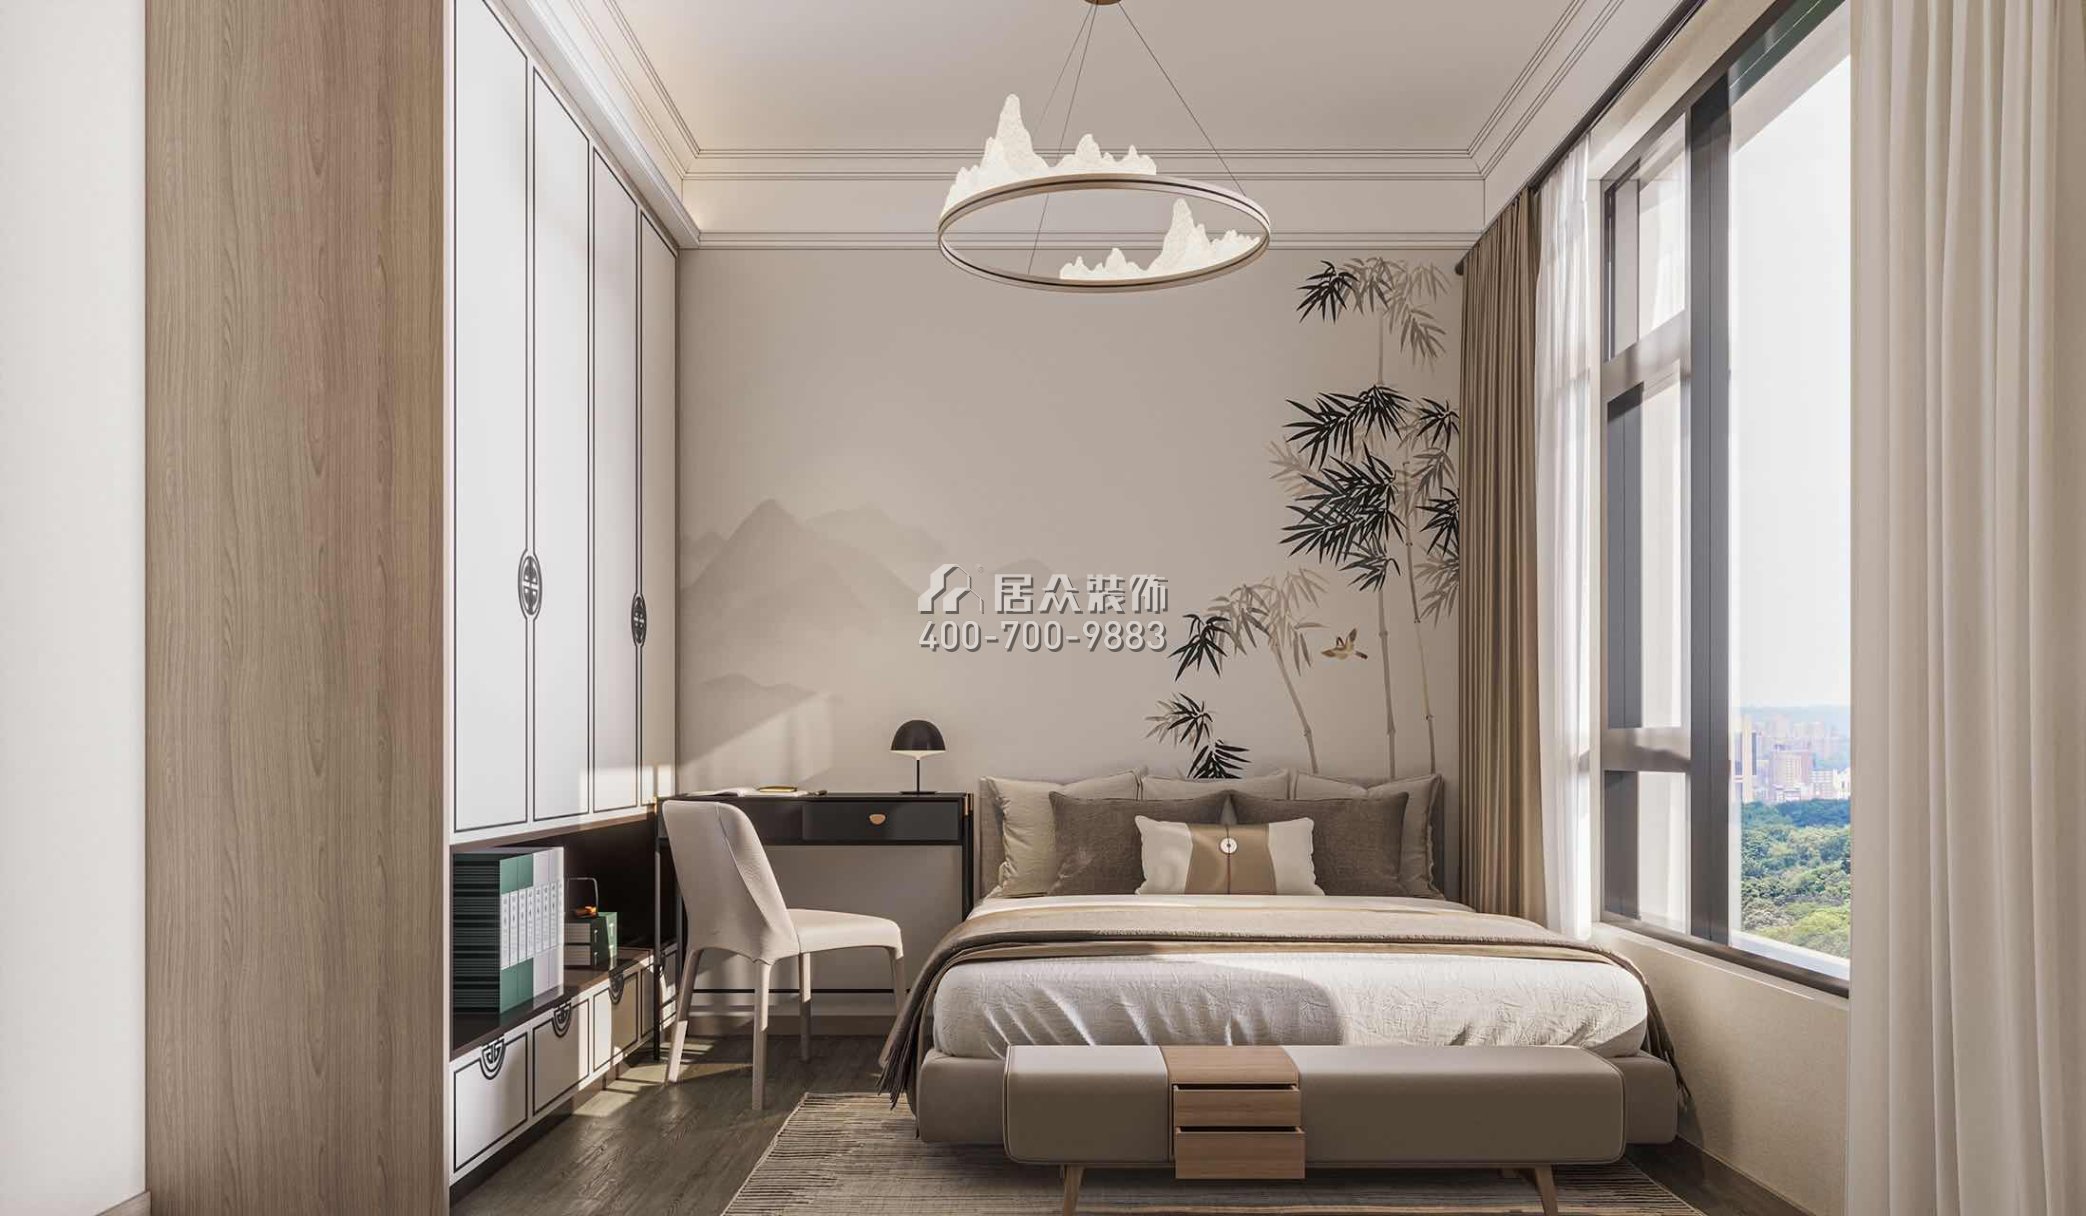 中海汤泉450平方米中式风格别墅户型卧室装修效果图